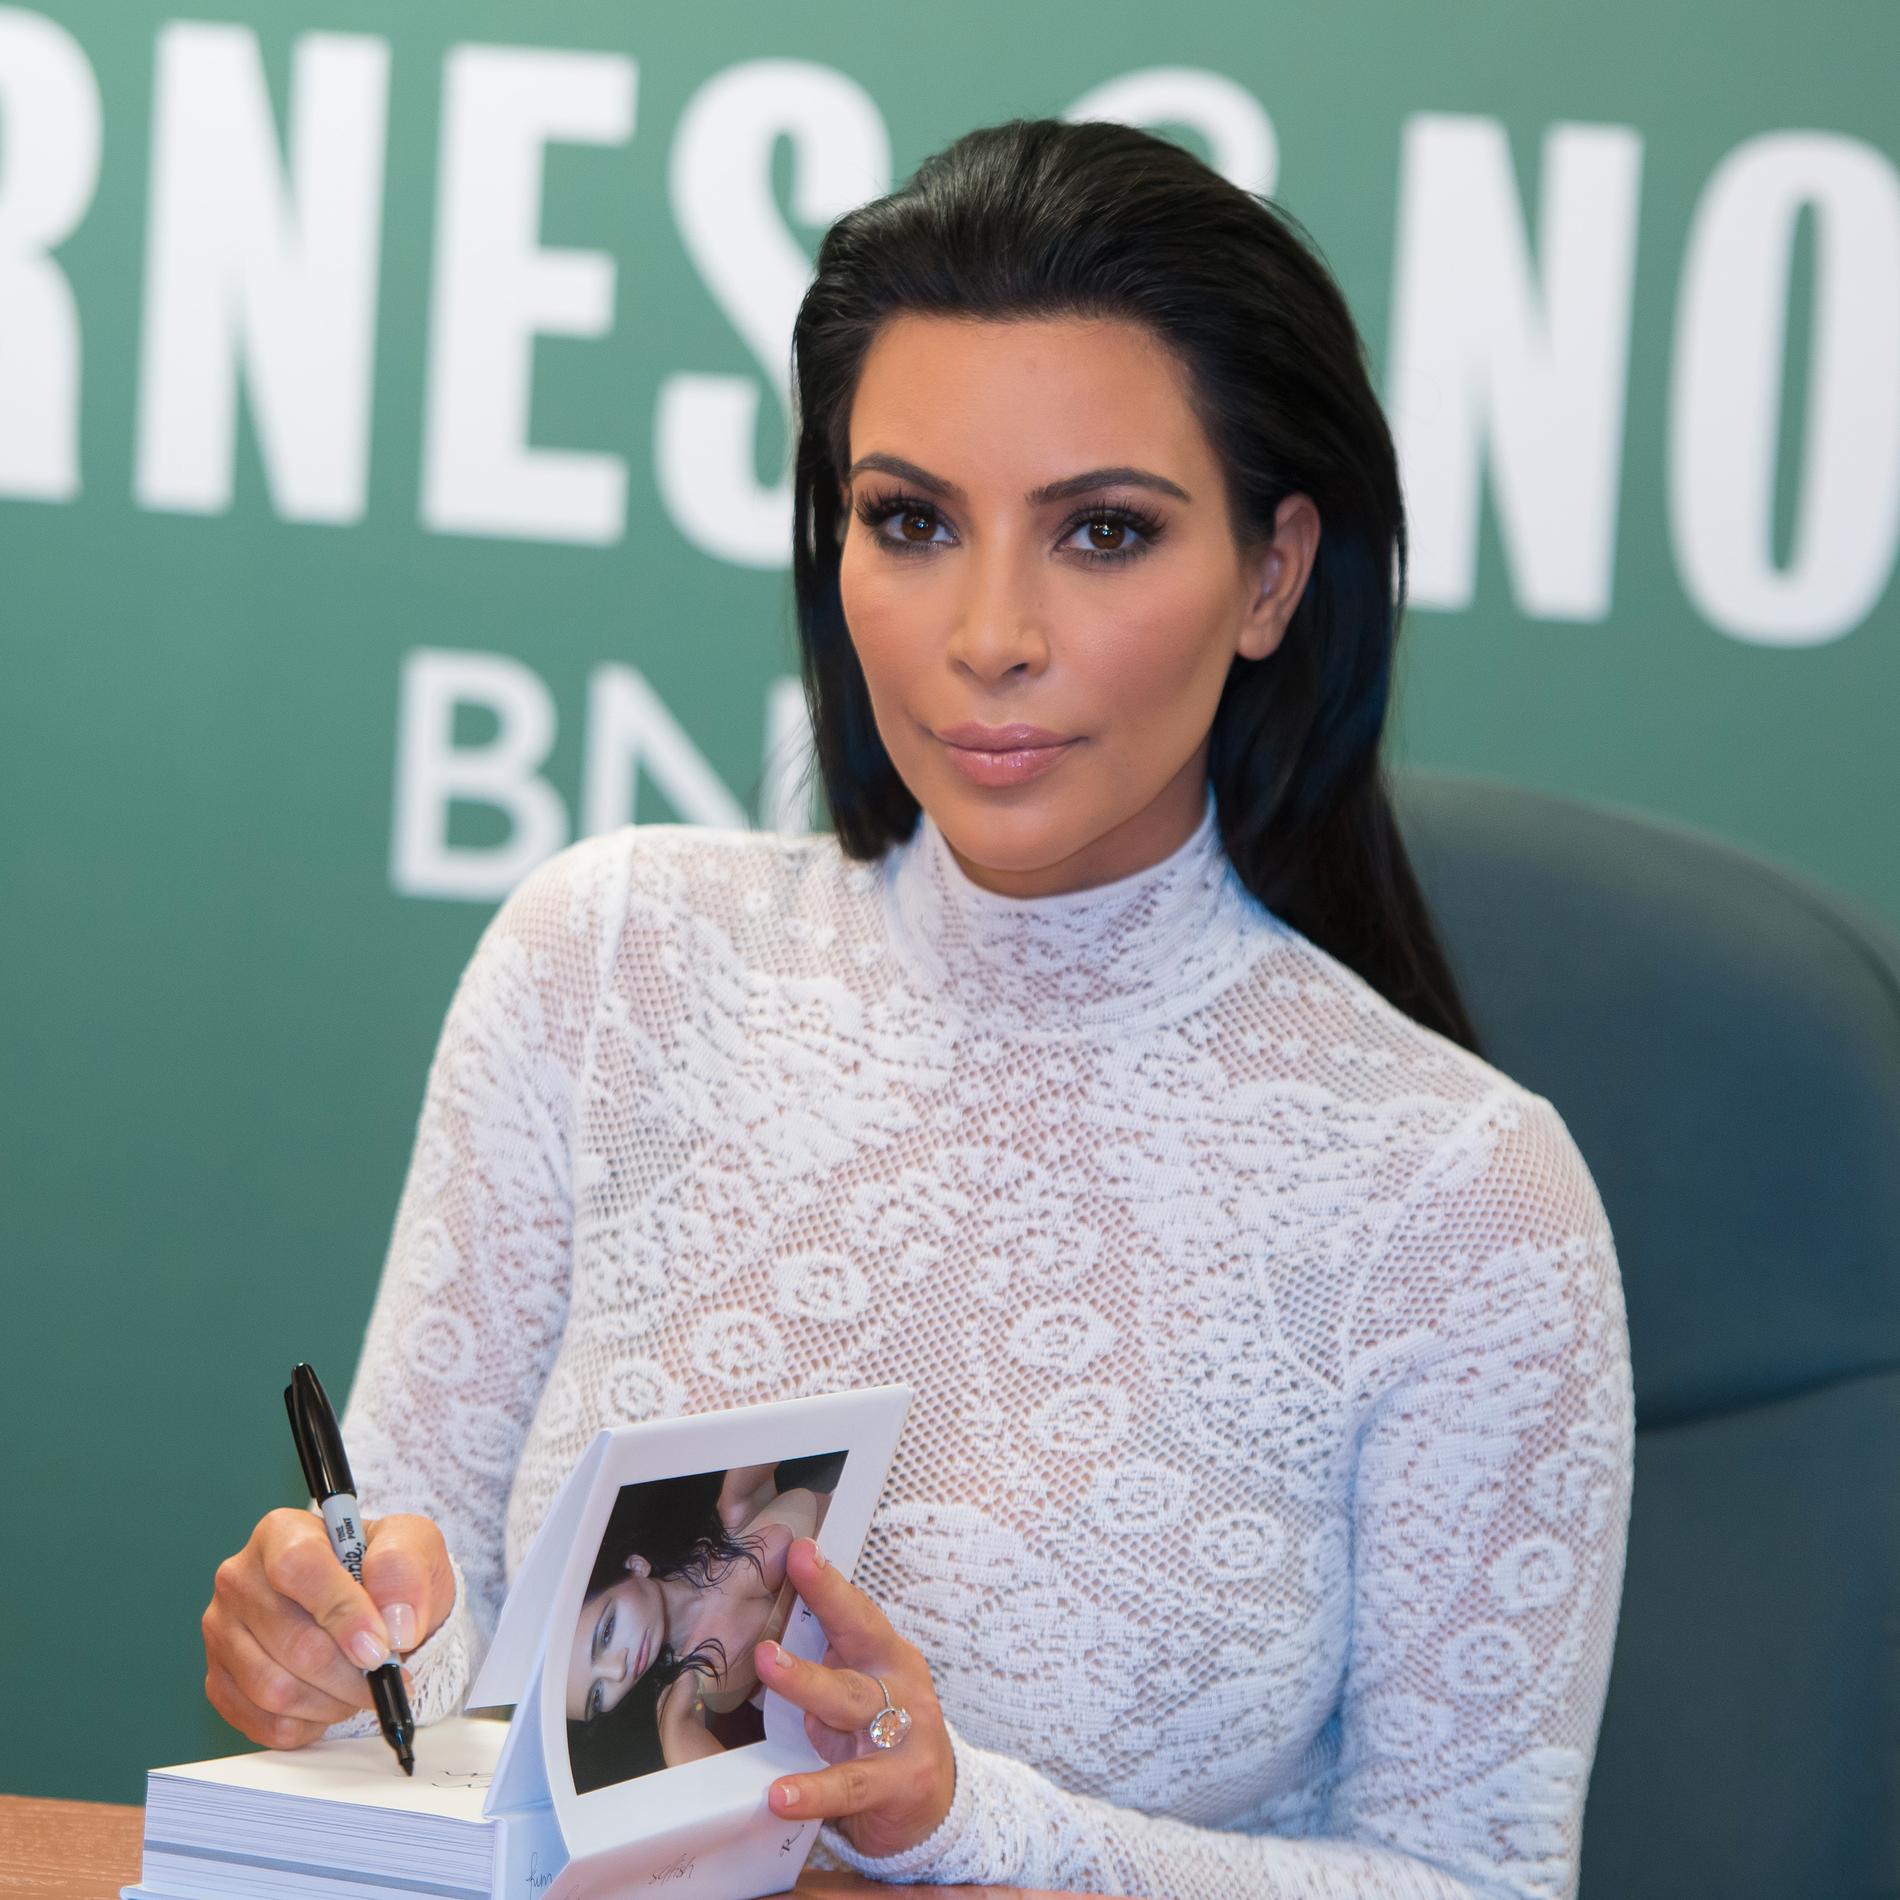 Boksignerarminen Kim Kardashian West gör reklam för sin nya bok ”Selfish” på femte avenyn i New York.